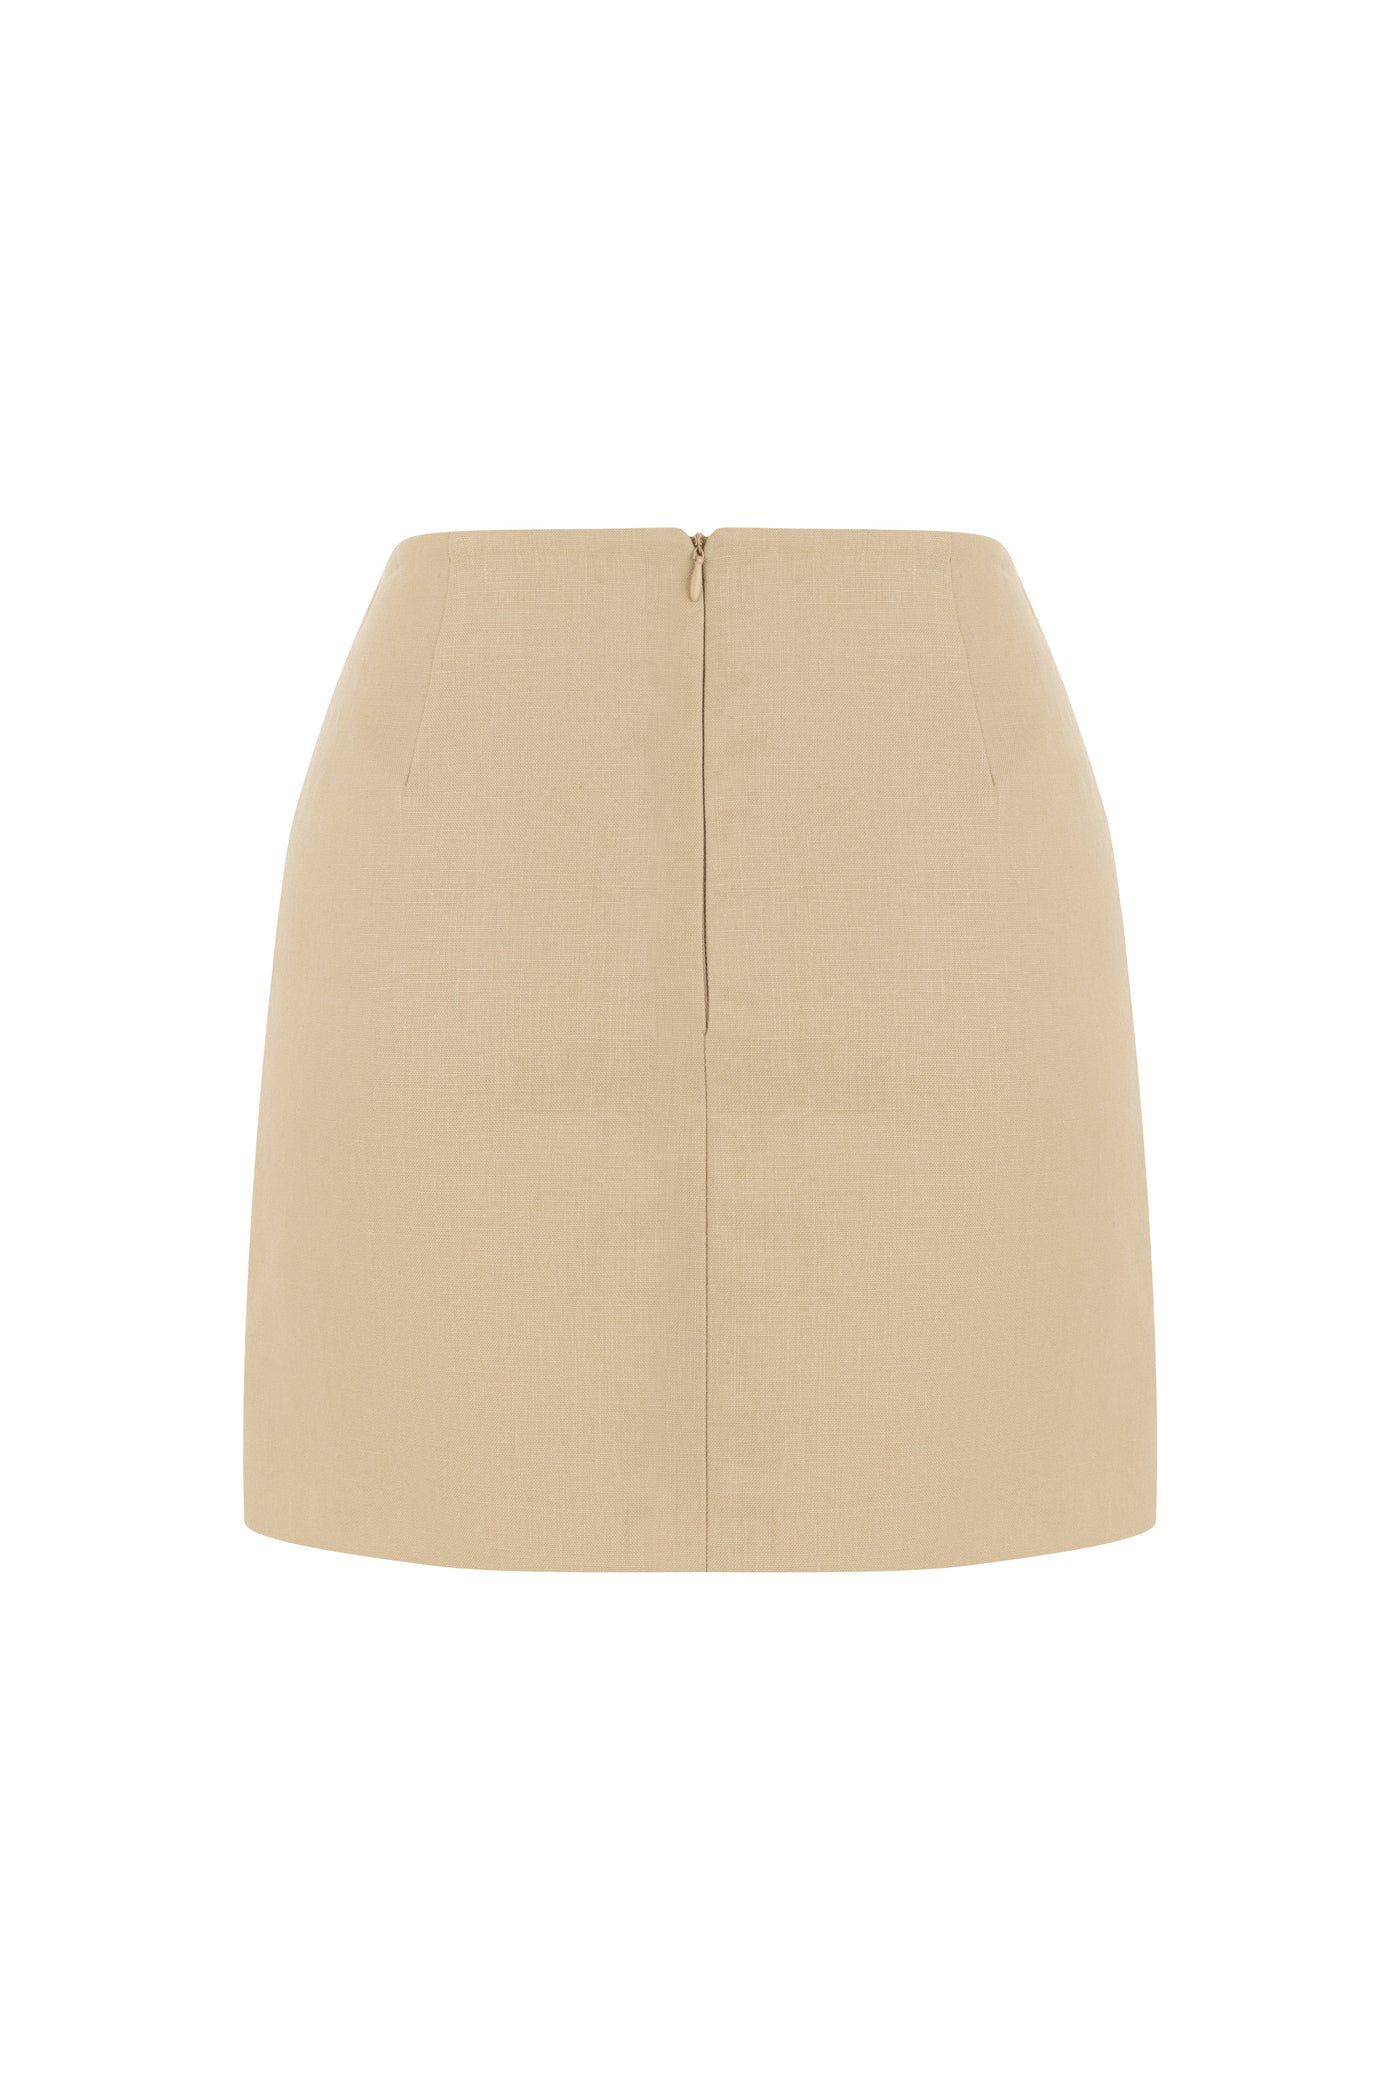 Shine Linen Skirt